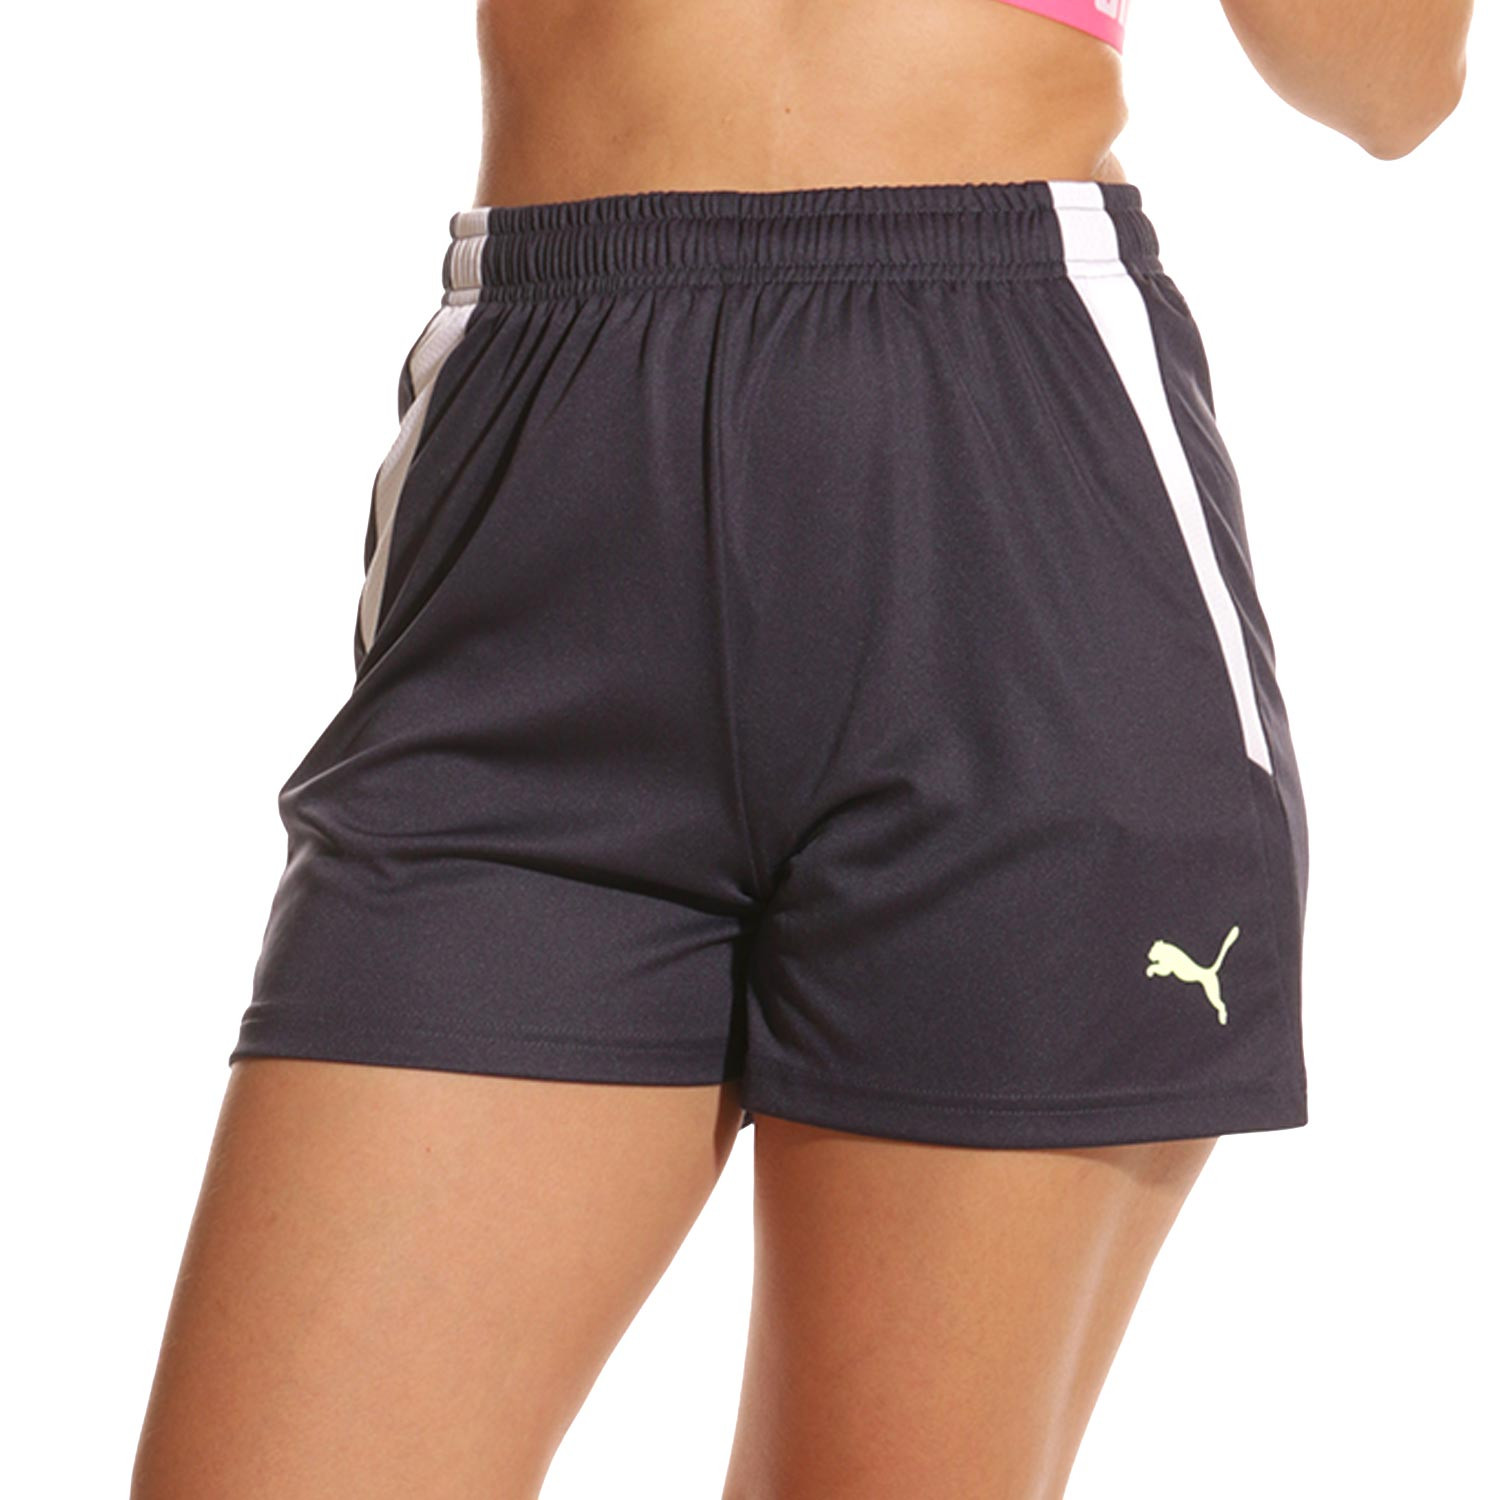 Pantalones y shorts deportivos de mujer. Compra online - Kelme